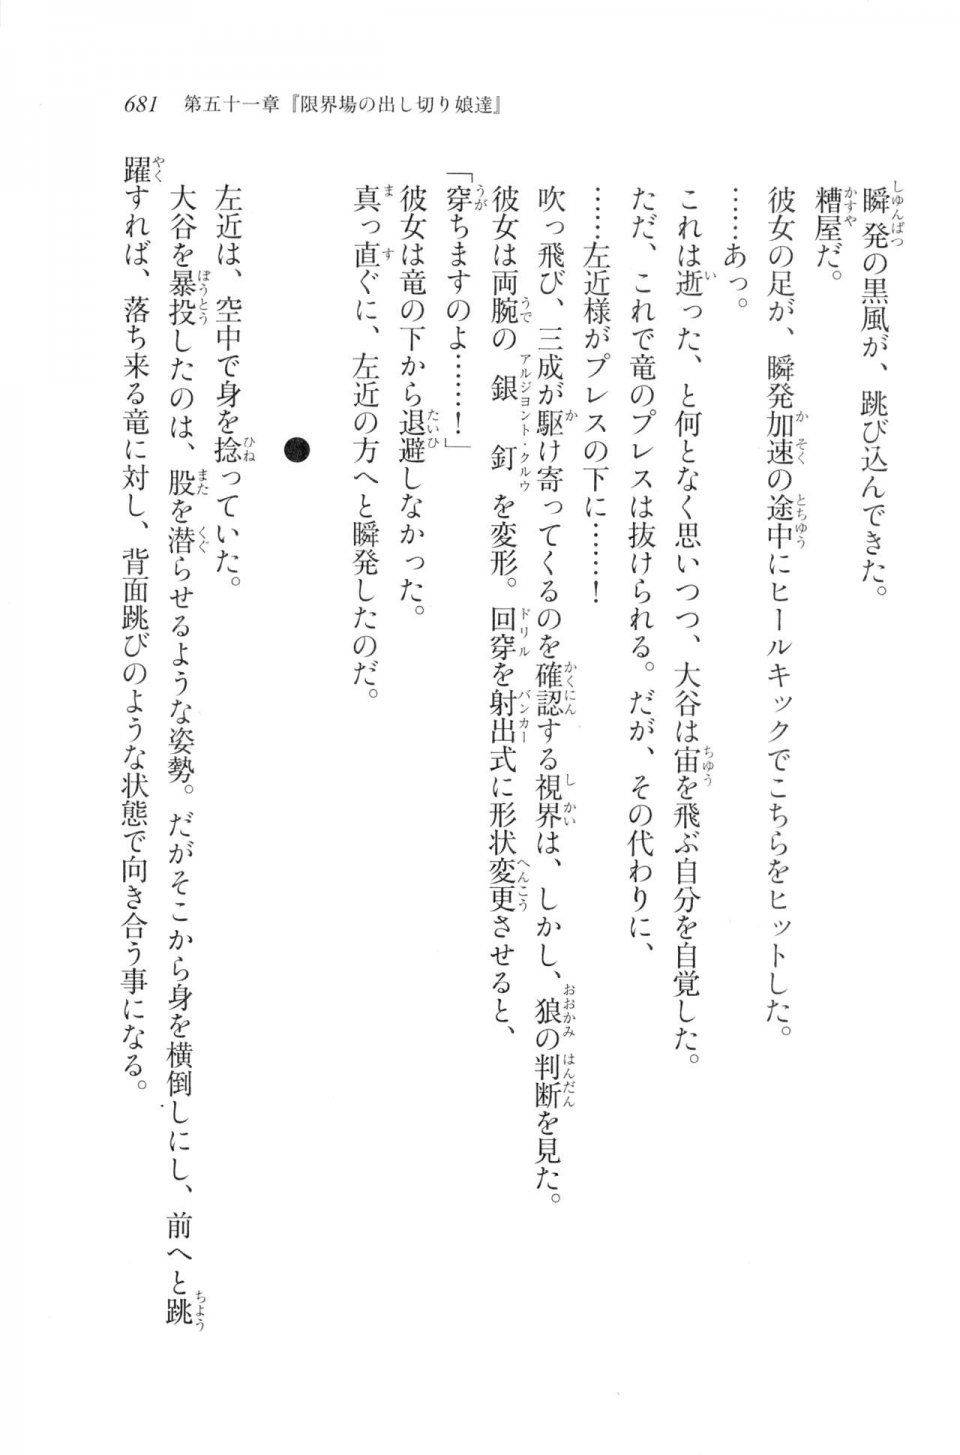 Kyoukai Senjou no Horizon LN Vol 20(8B) - Photo #681